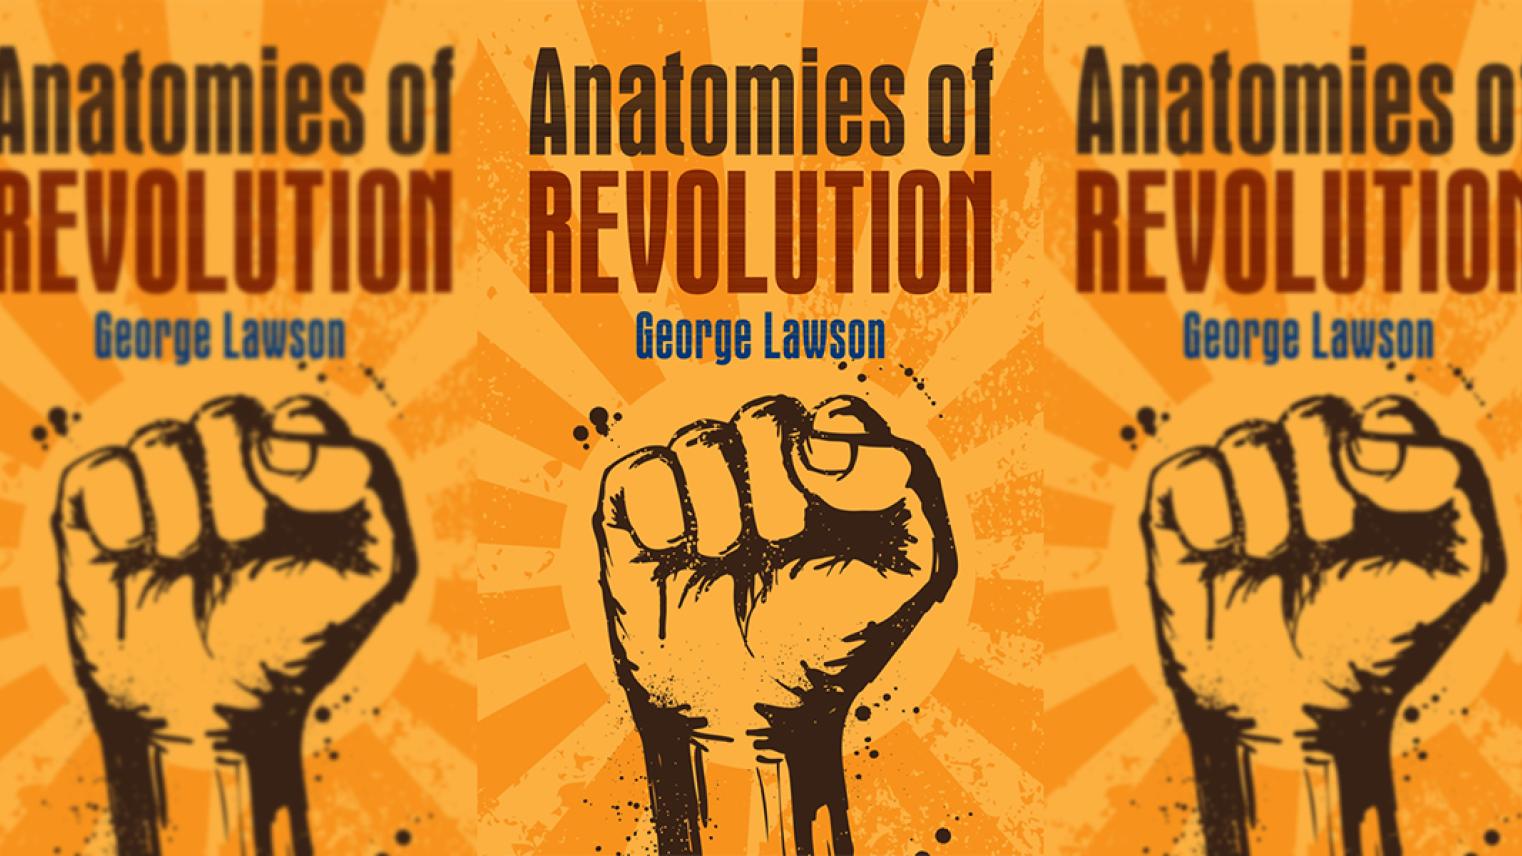 Anatomies of Revolution